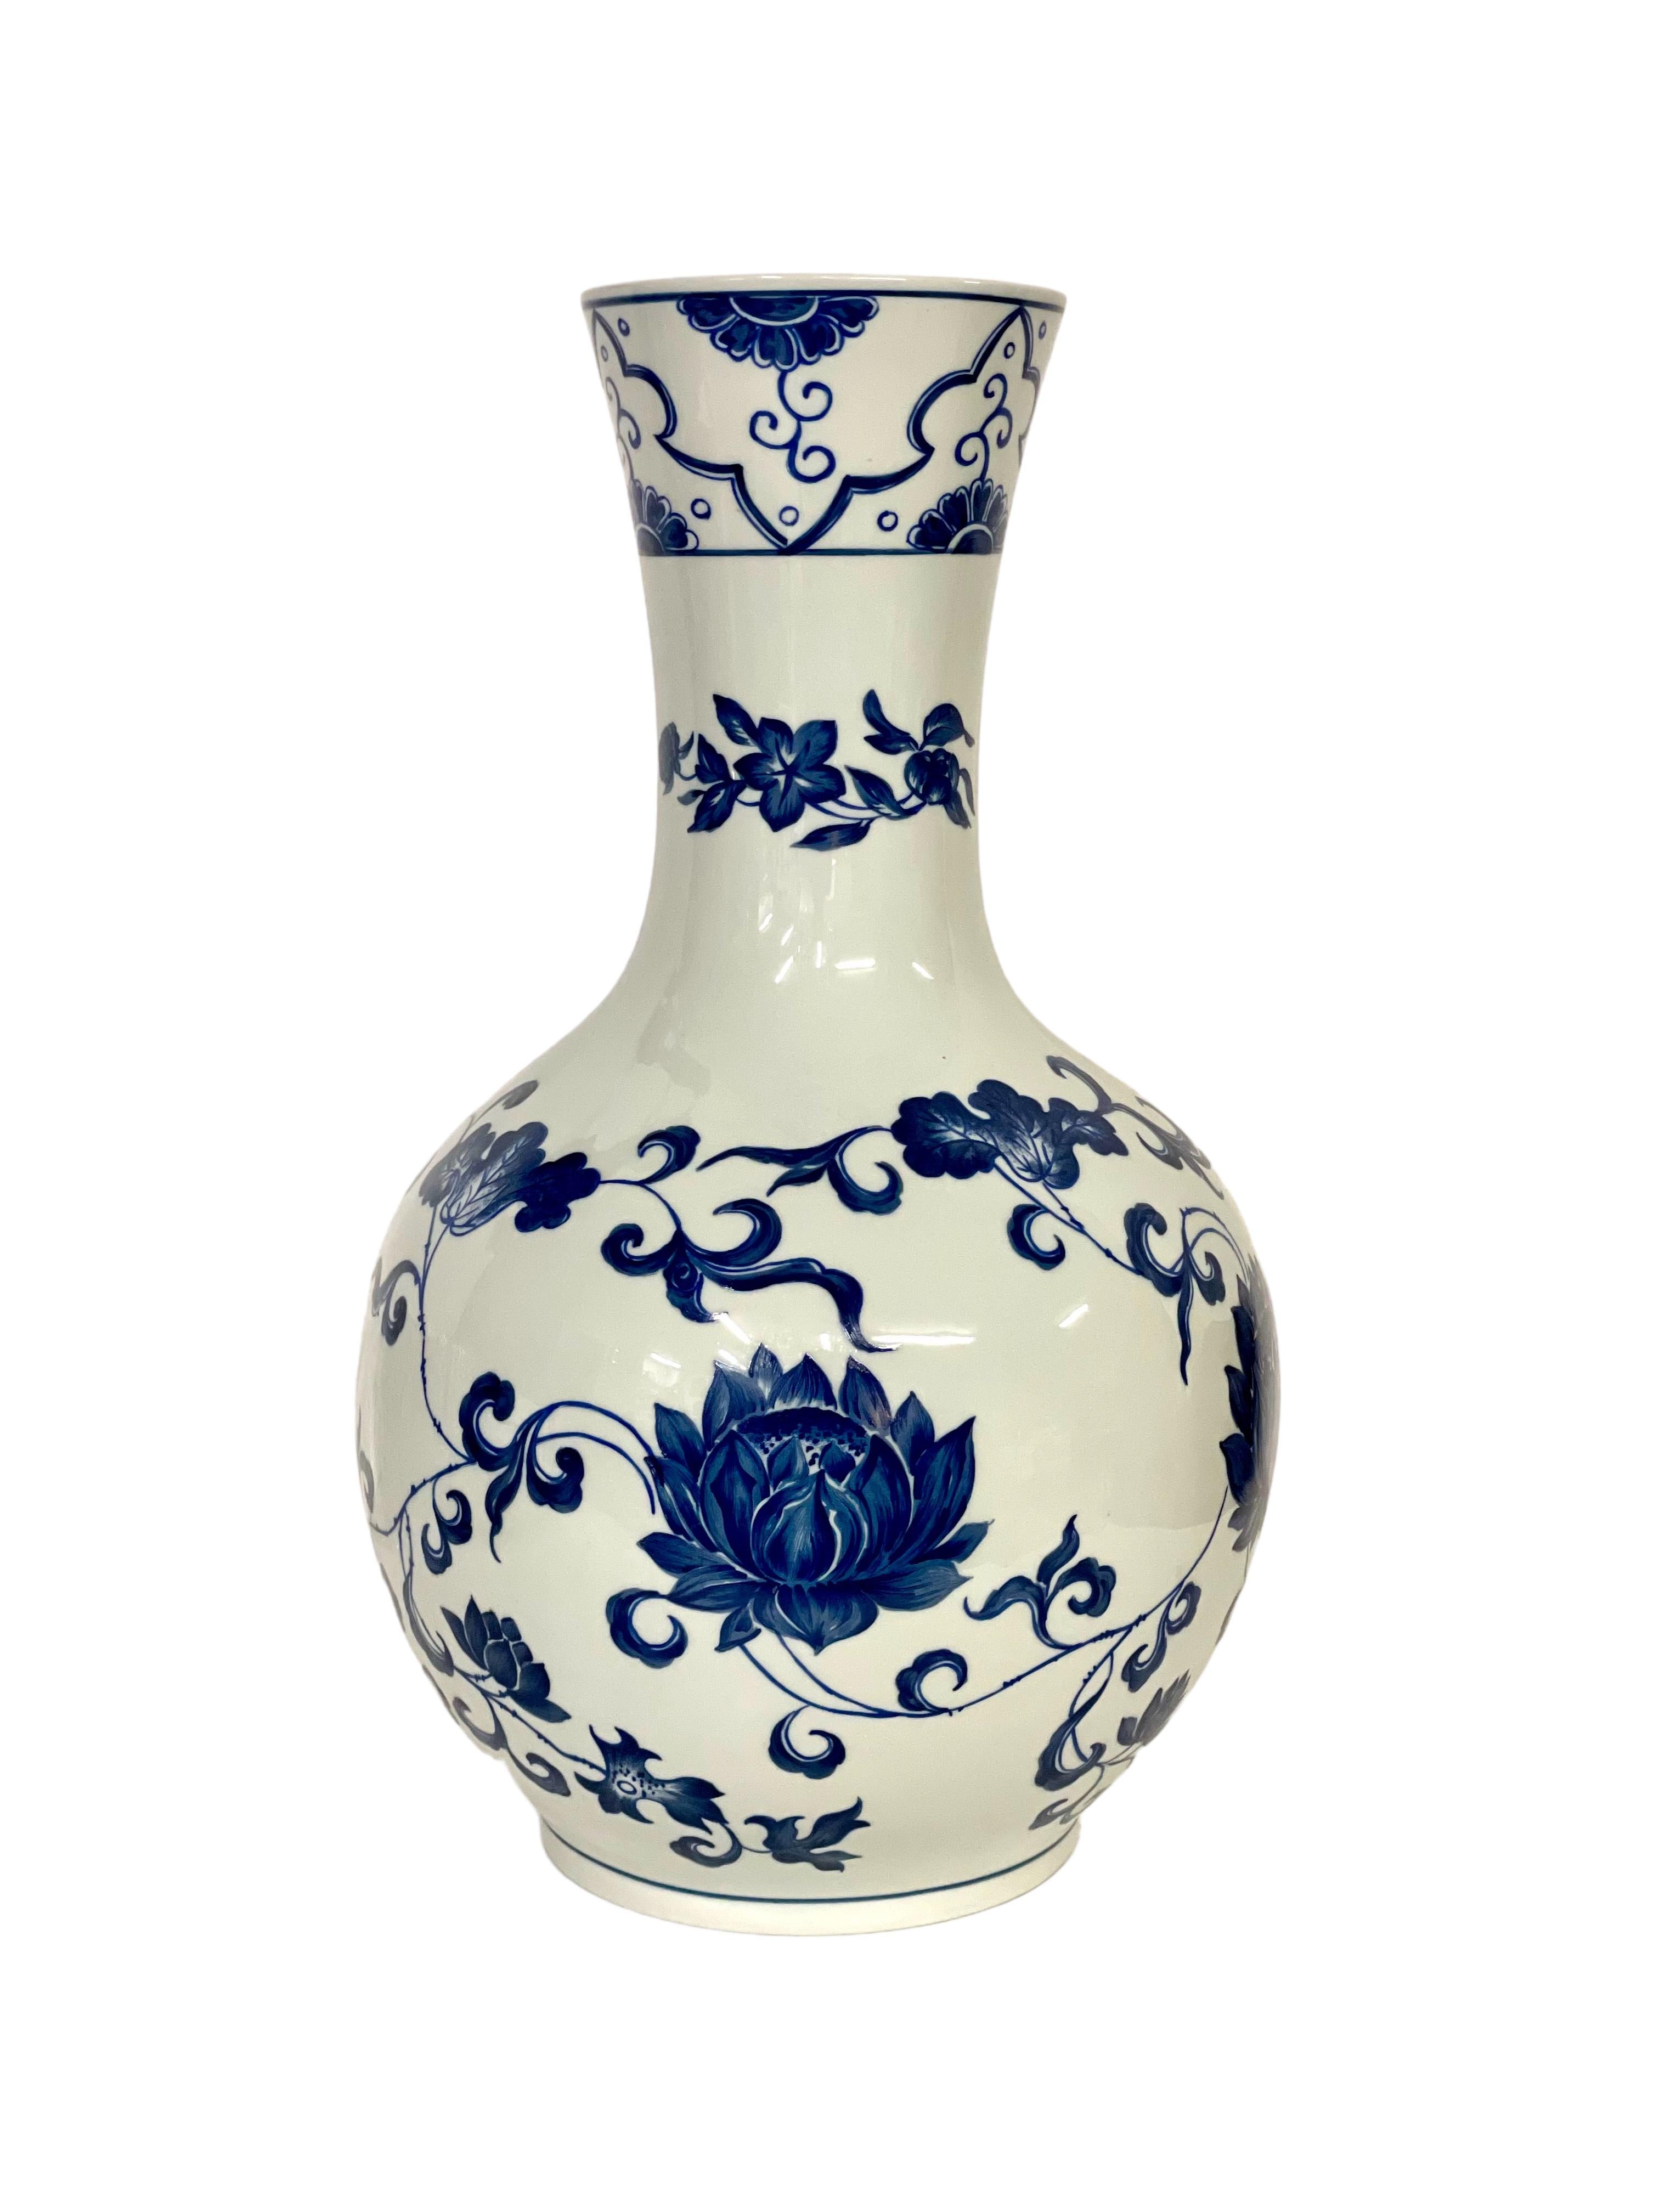 Diese wundervoll statuenhafte Vase aus Pariser Porzellan des späten 19. Jahrhunderts ist innen und außen vollständig glasiert und mit einem handgemalten Muster aus blauen Blüten vor weißem Hintergrund verziert. Diese schlichte, aber elegante Vase